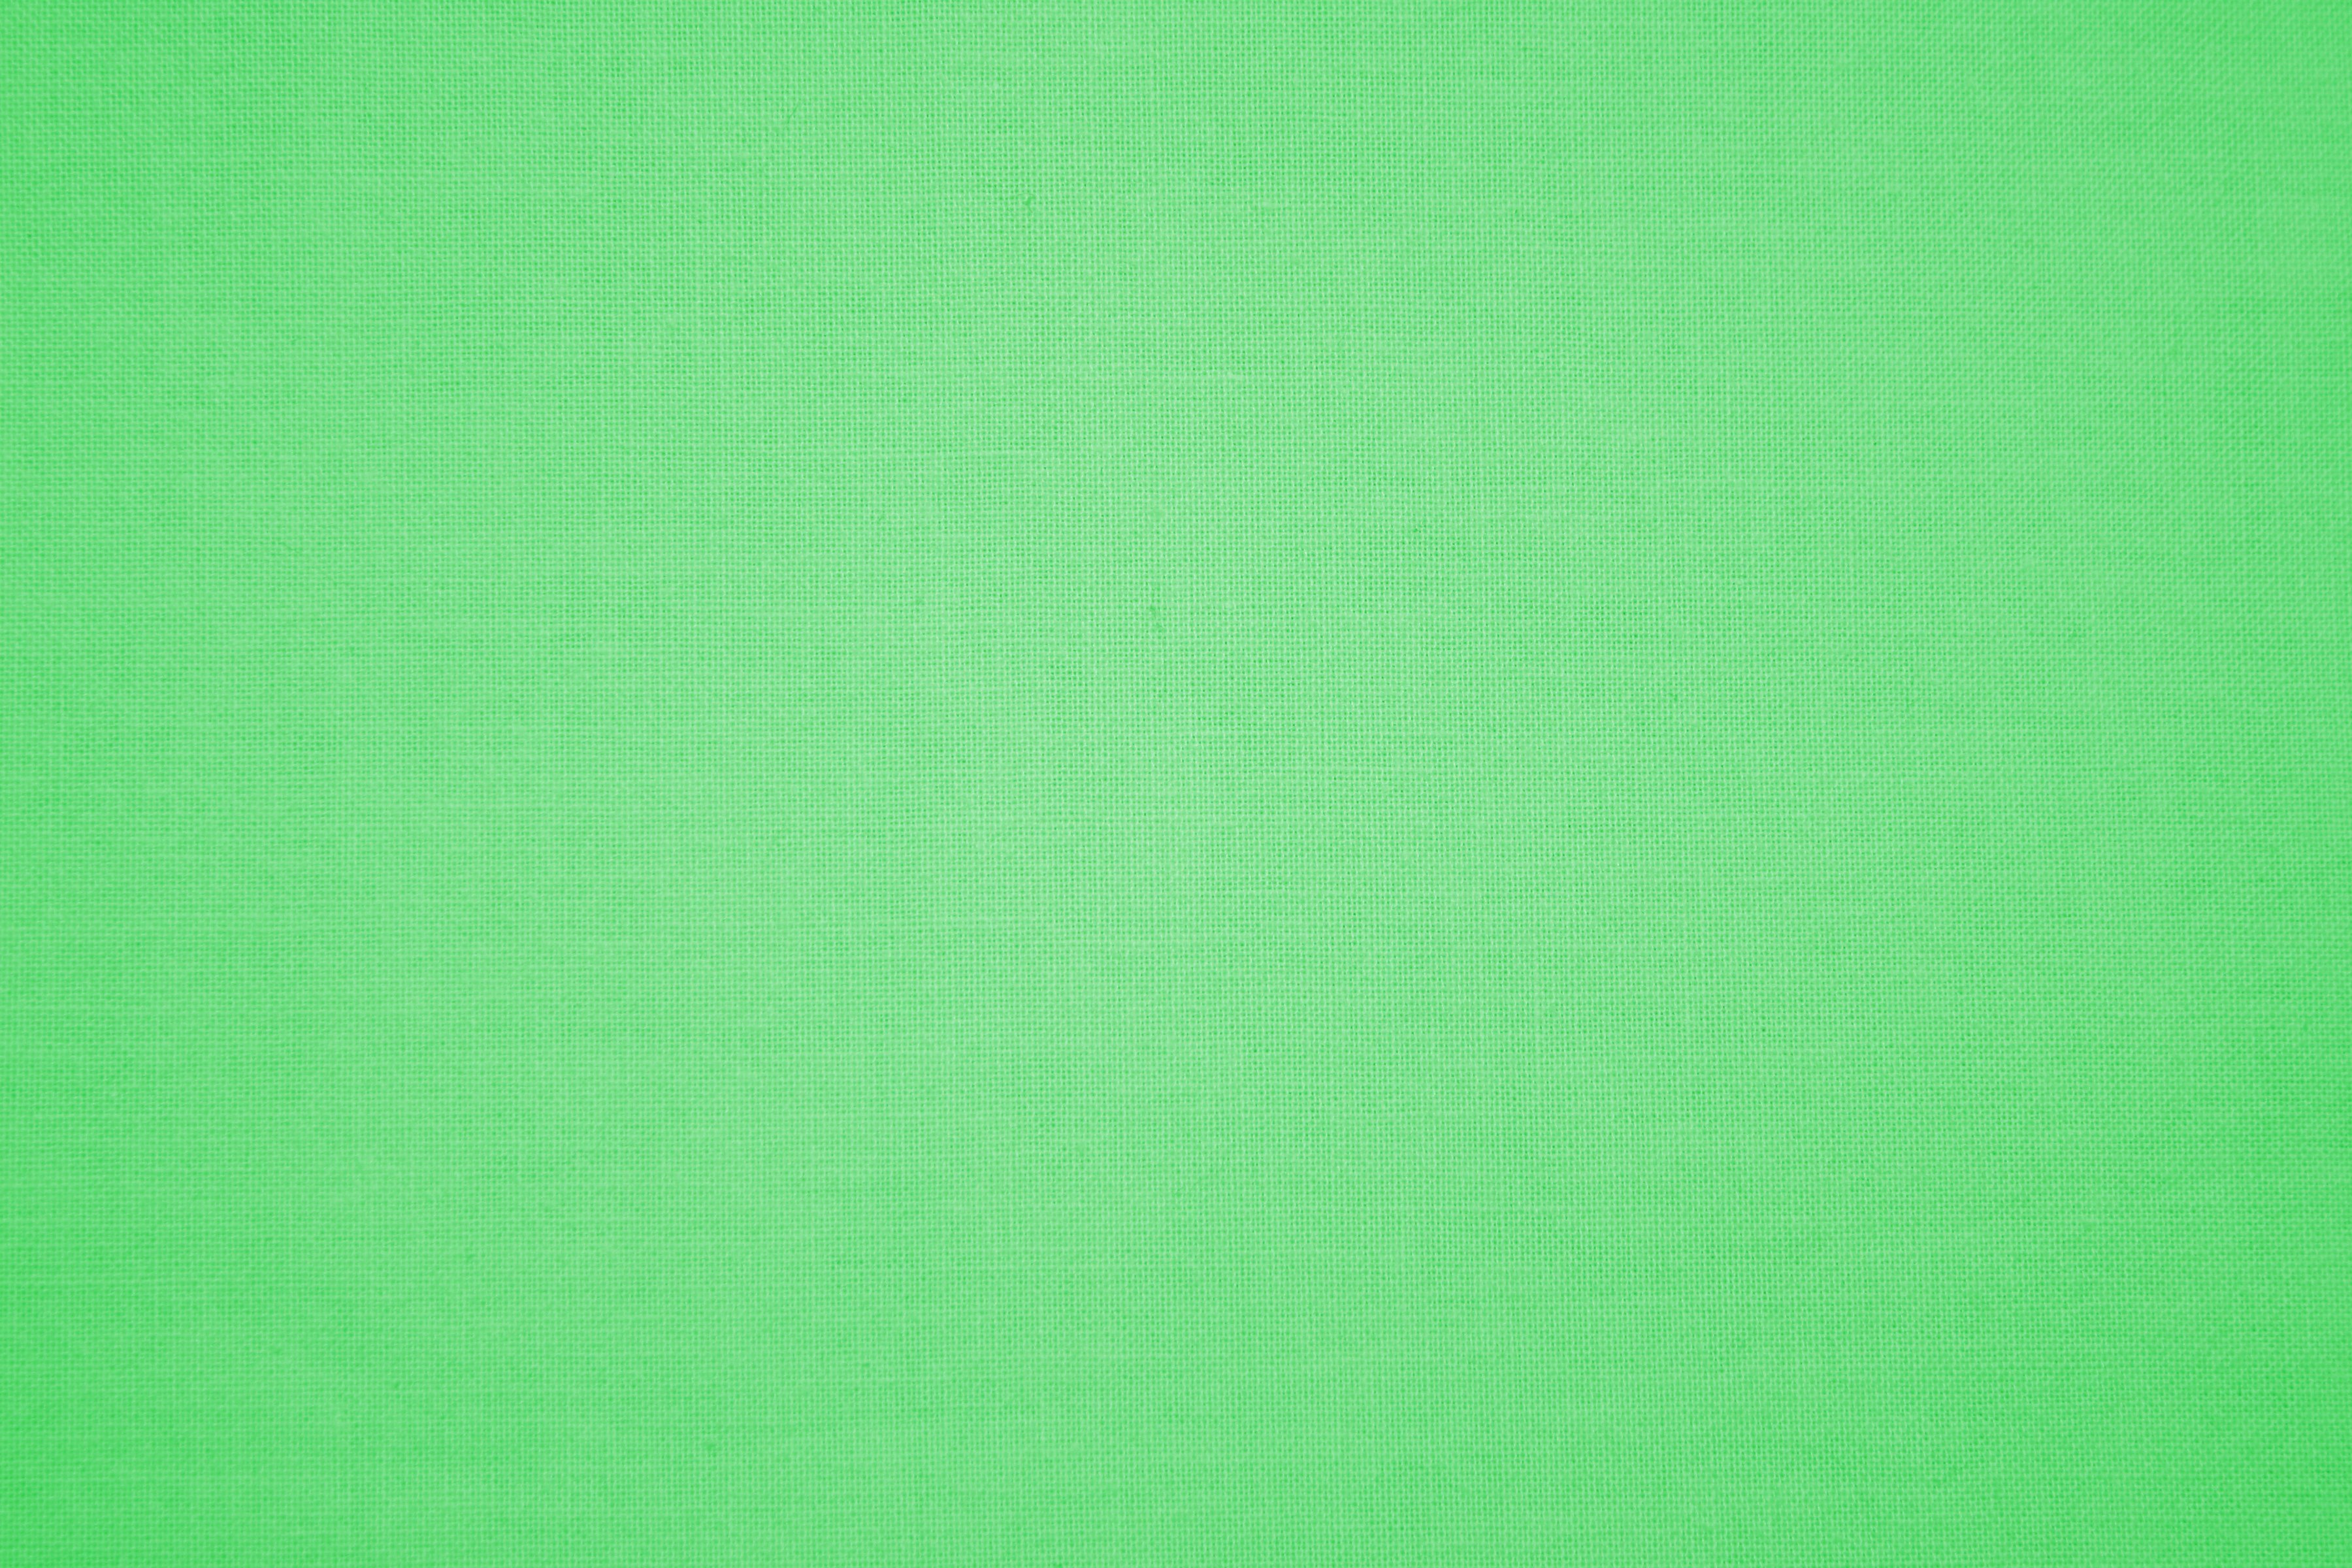 Слабо зеленый цвет. Светло зеленый цвет. Фон однотонный. Бледно зеленый. Зеленый цвет однотонный.